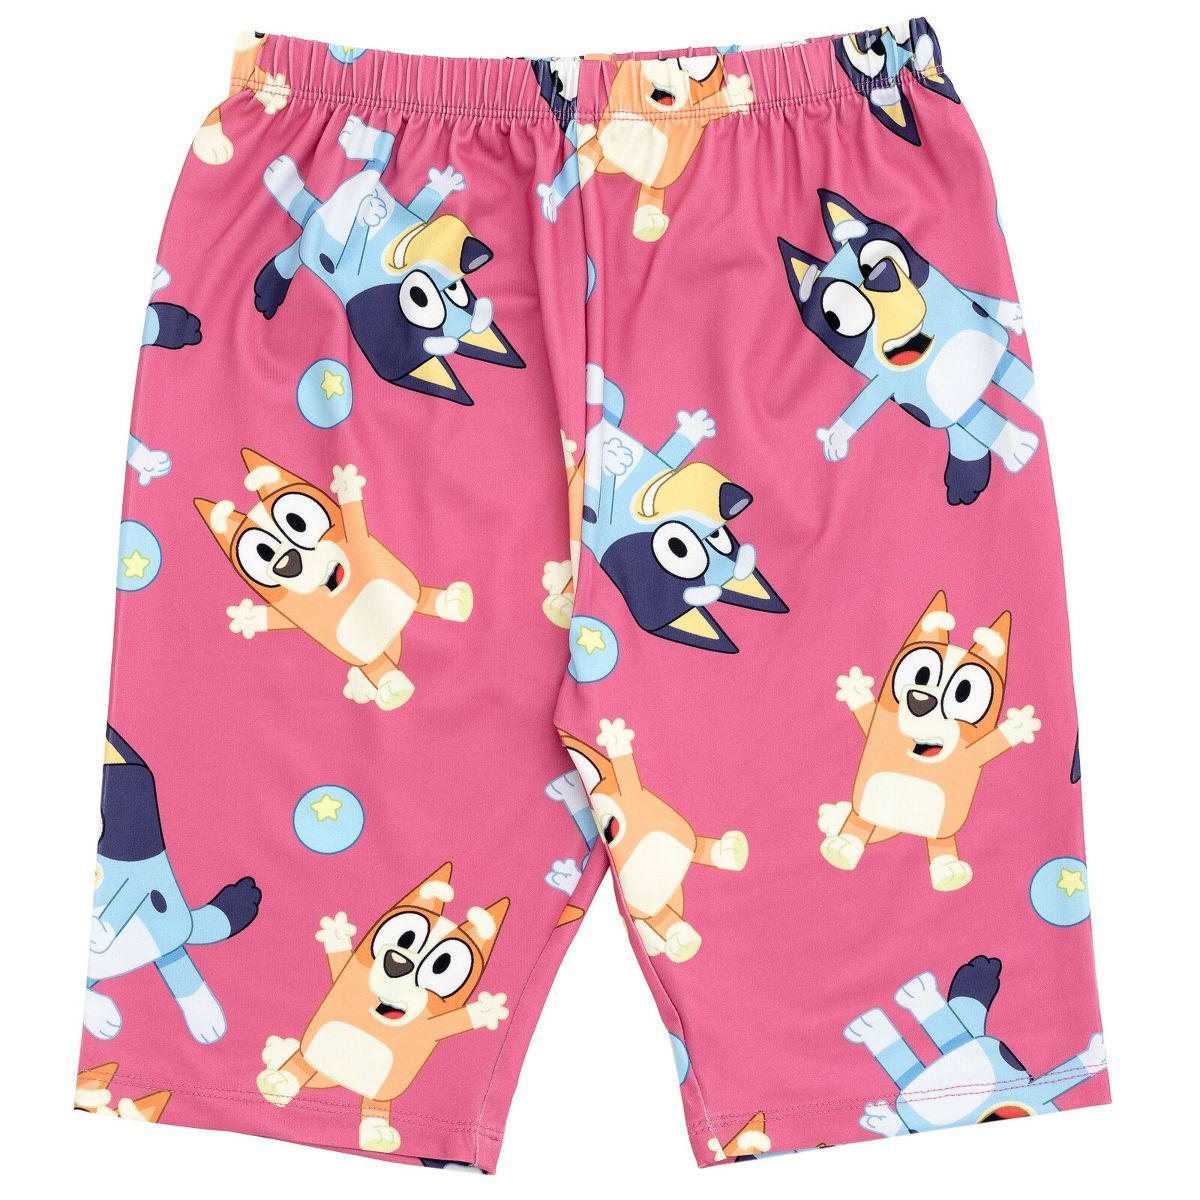 Bluey Bingo Girls T-Shirt and Shorts Outfit Set Toddler to Big Kid | Target